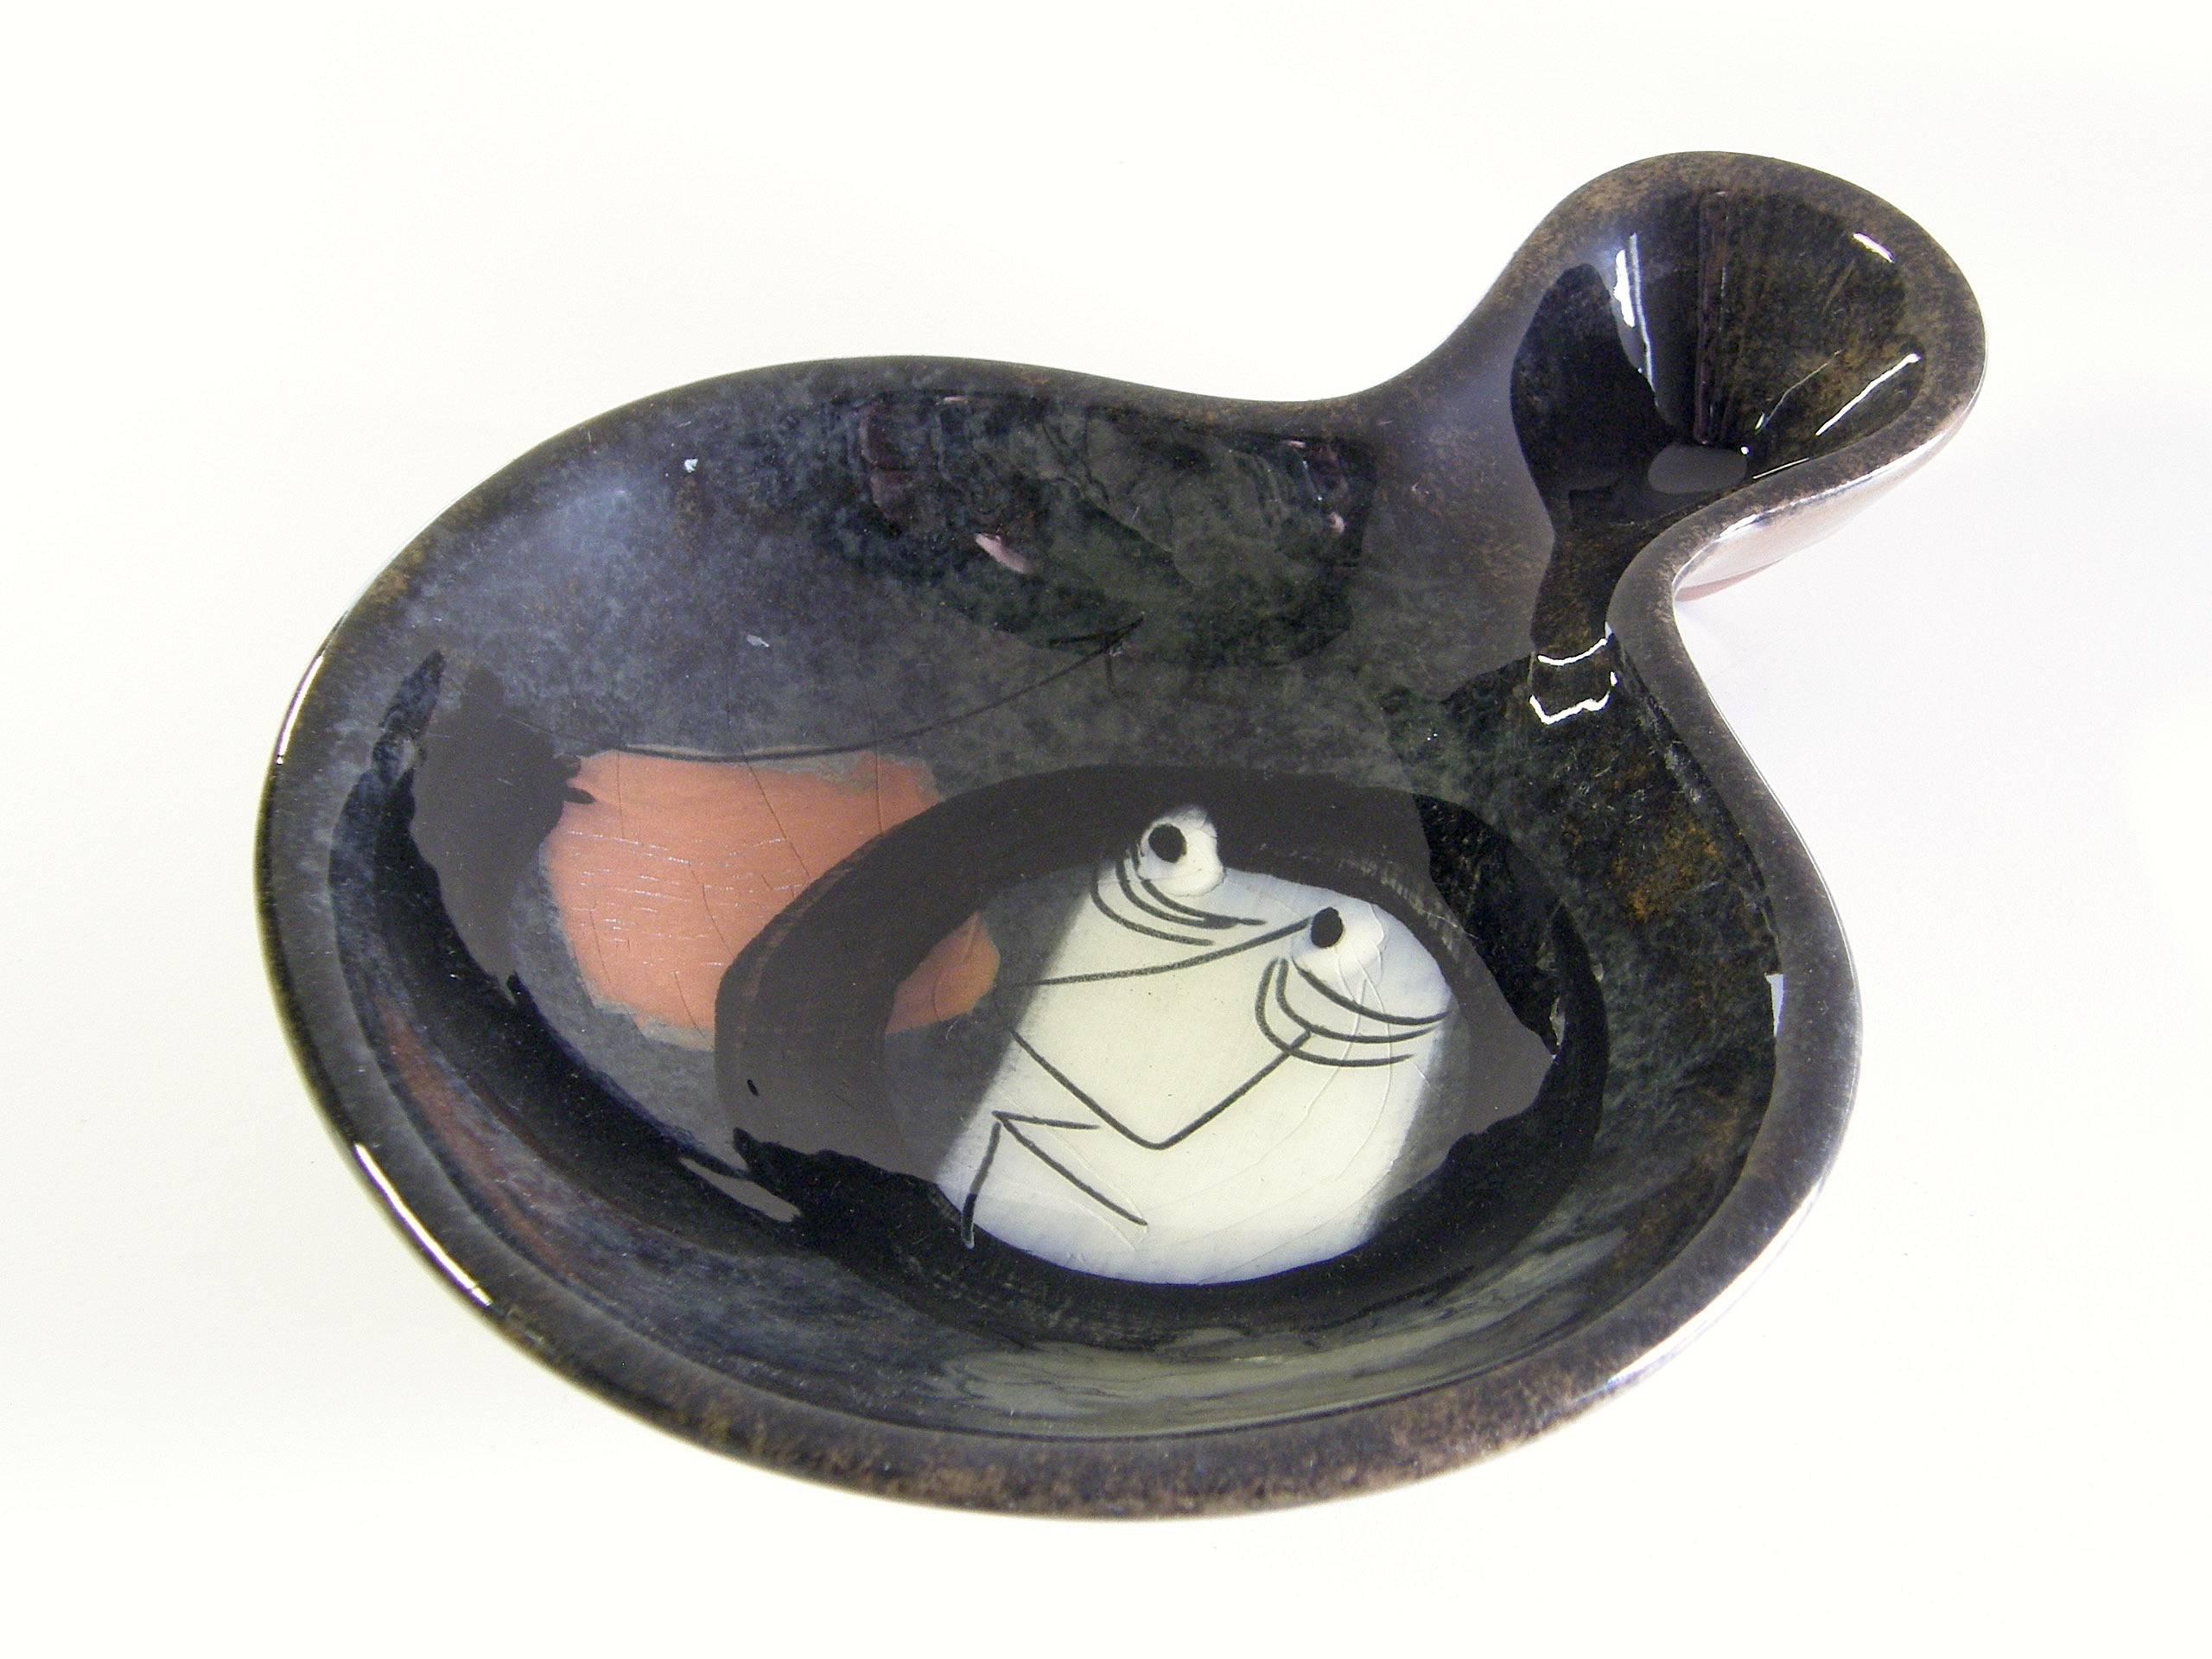 Diese lustige Keramikschale des kalifornischen Töpfers Edmund Ronaky hat eine freie Form und eine zweiteilige Gestalt. Sie hat eine Hochglanzglasur über dem Motiv eines besorgt dreinblickenden Mannes, der ein Eskimo mit einem Speer zu sein